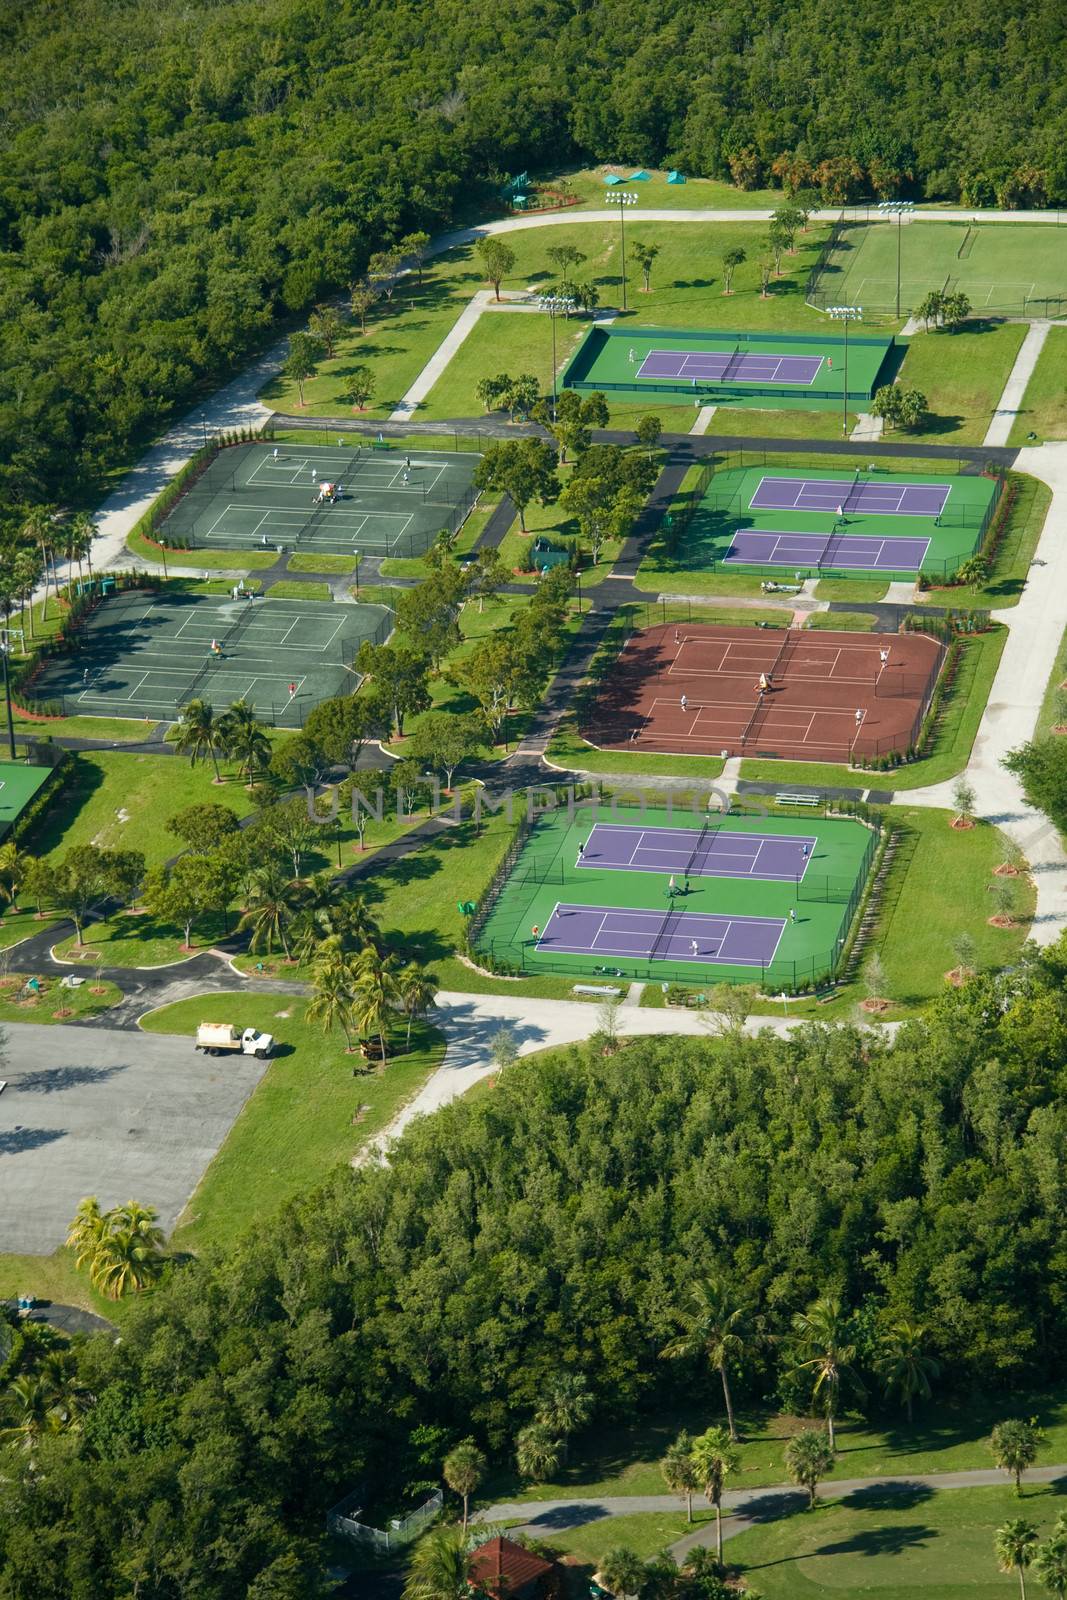 Crandon Park Tennis Center by CelsoDiniz